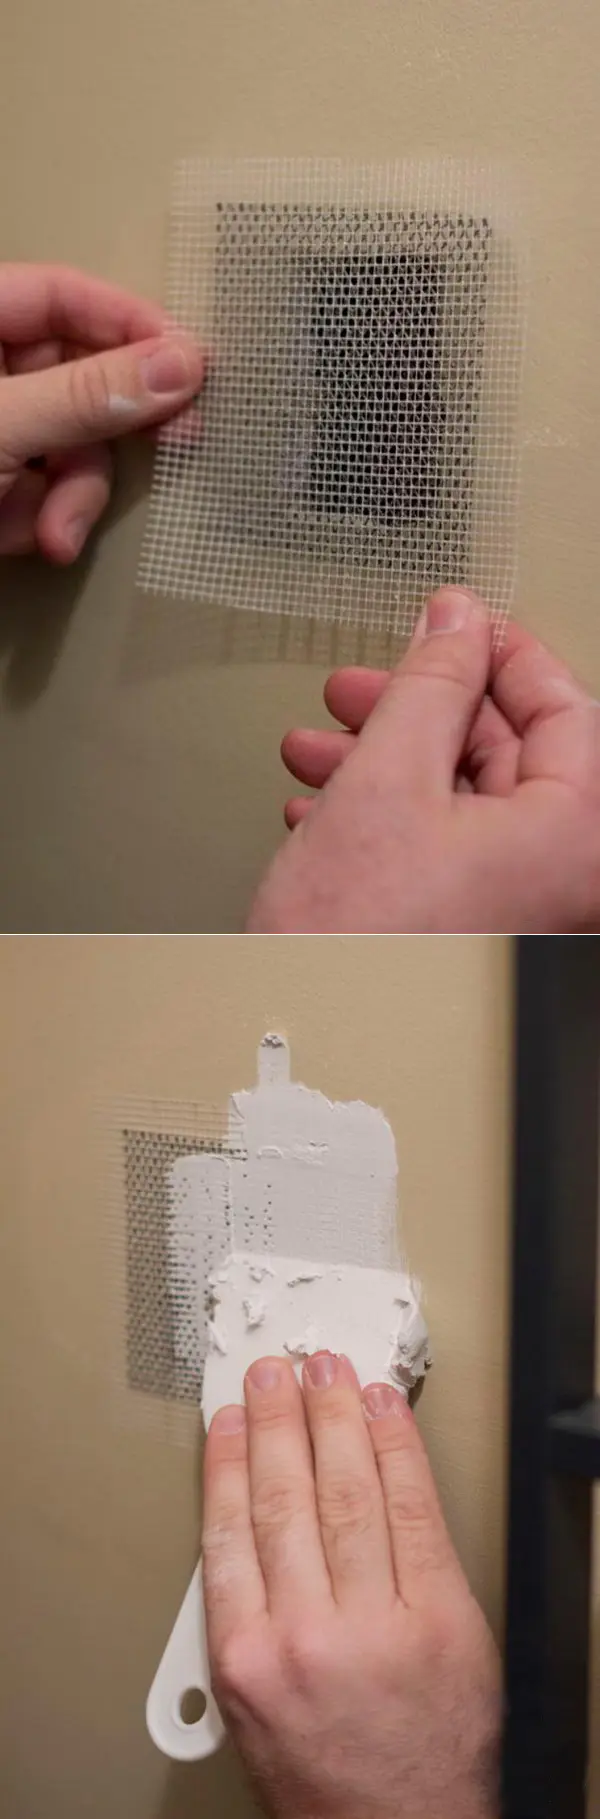 fiberglass plasterboard joint tape repair for holes